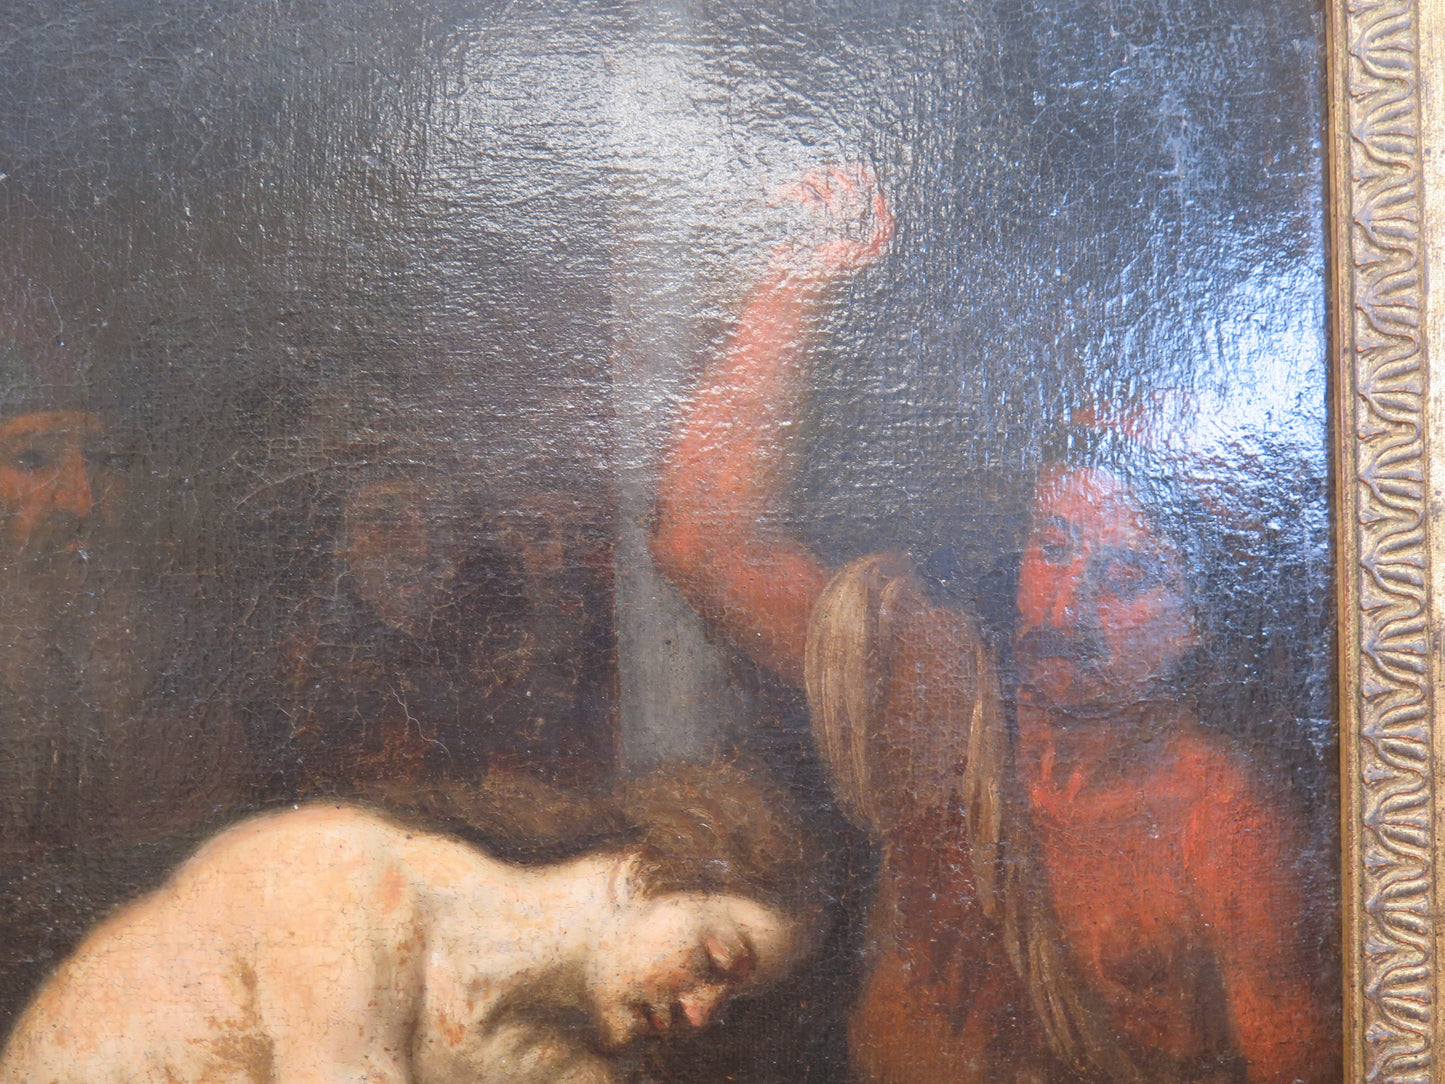 Quadro antico flagellazione di Cristo dipinto olio su tela VS11